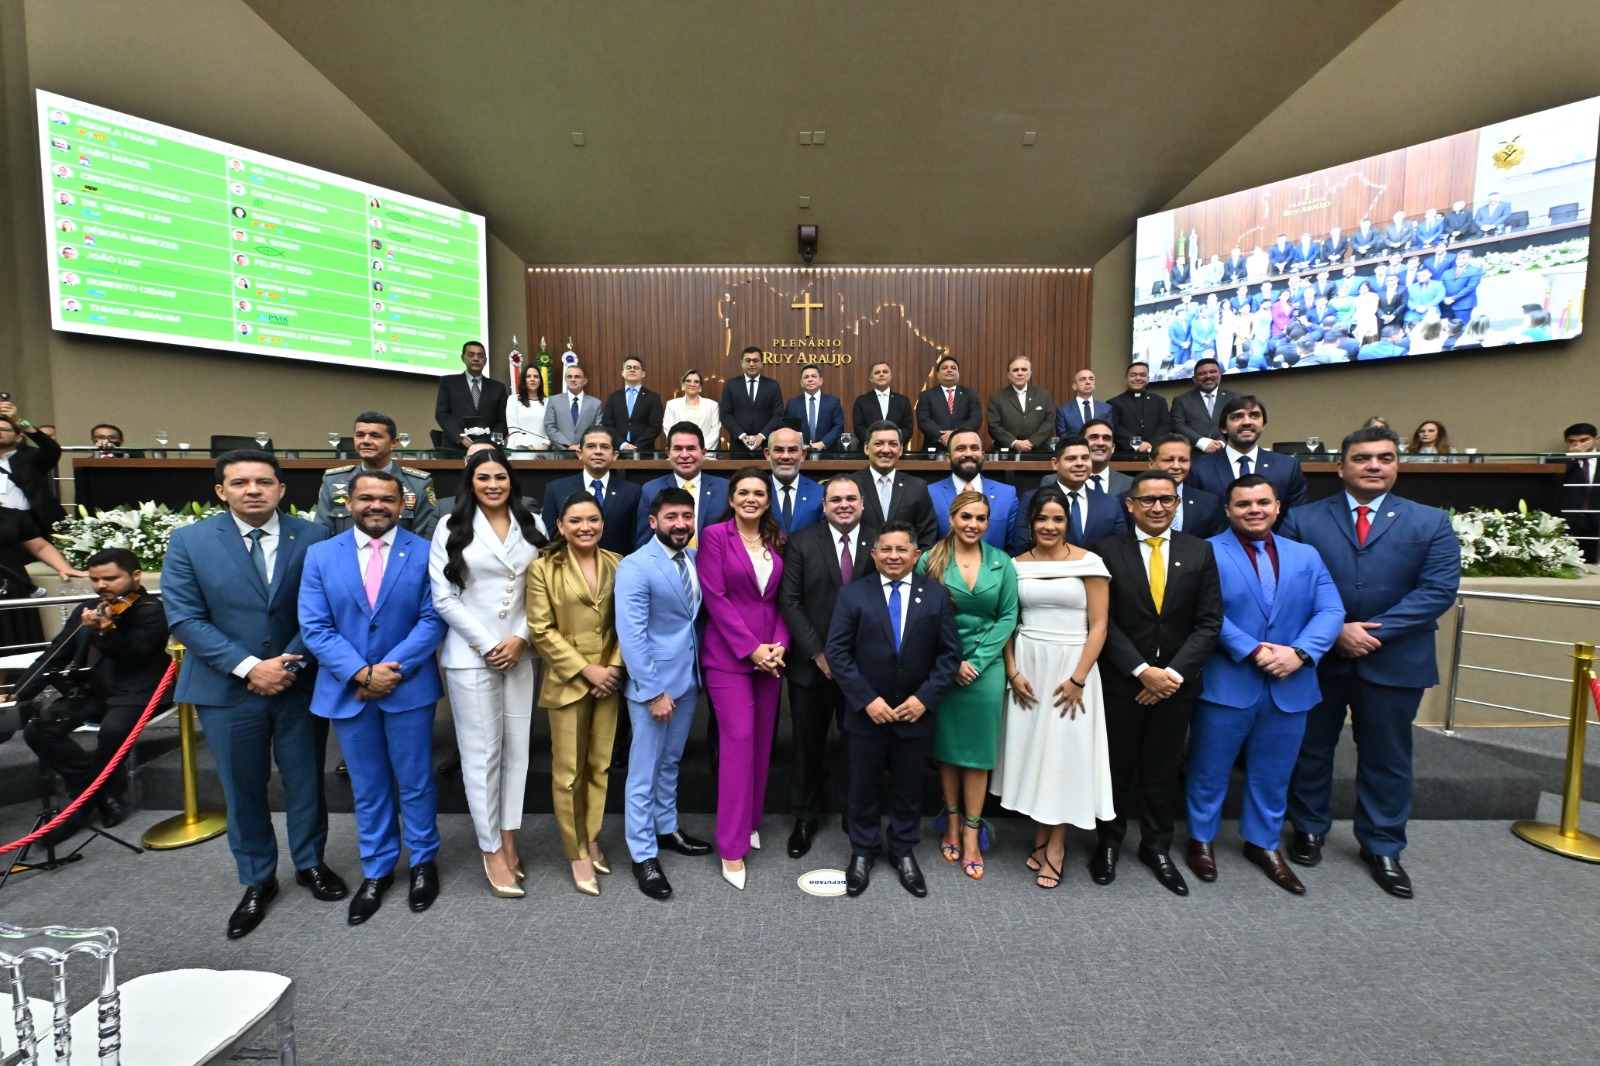 Assembleia do Amazonas realiza solenidade de posse dos deputados estaduais